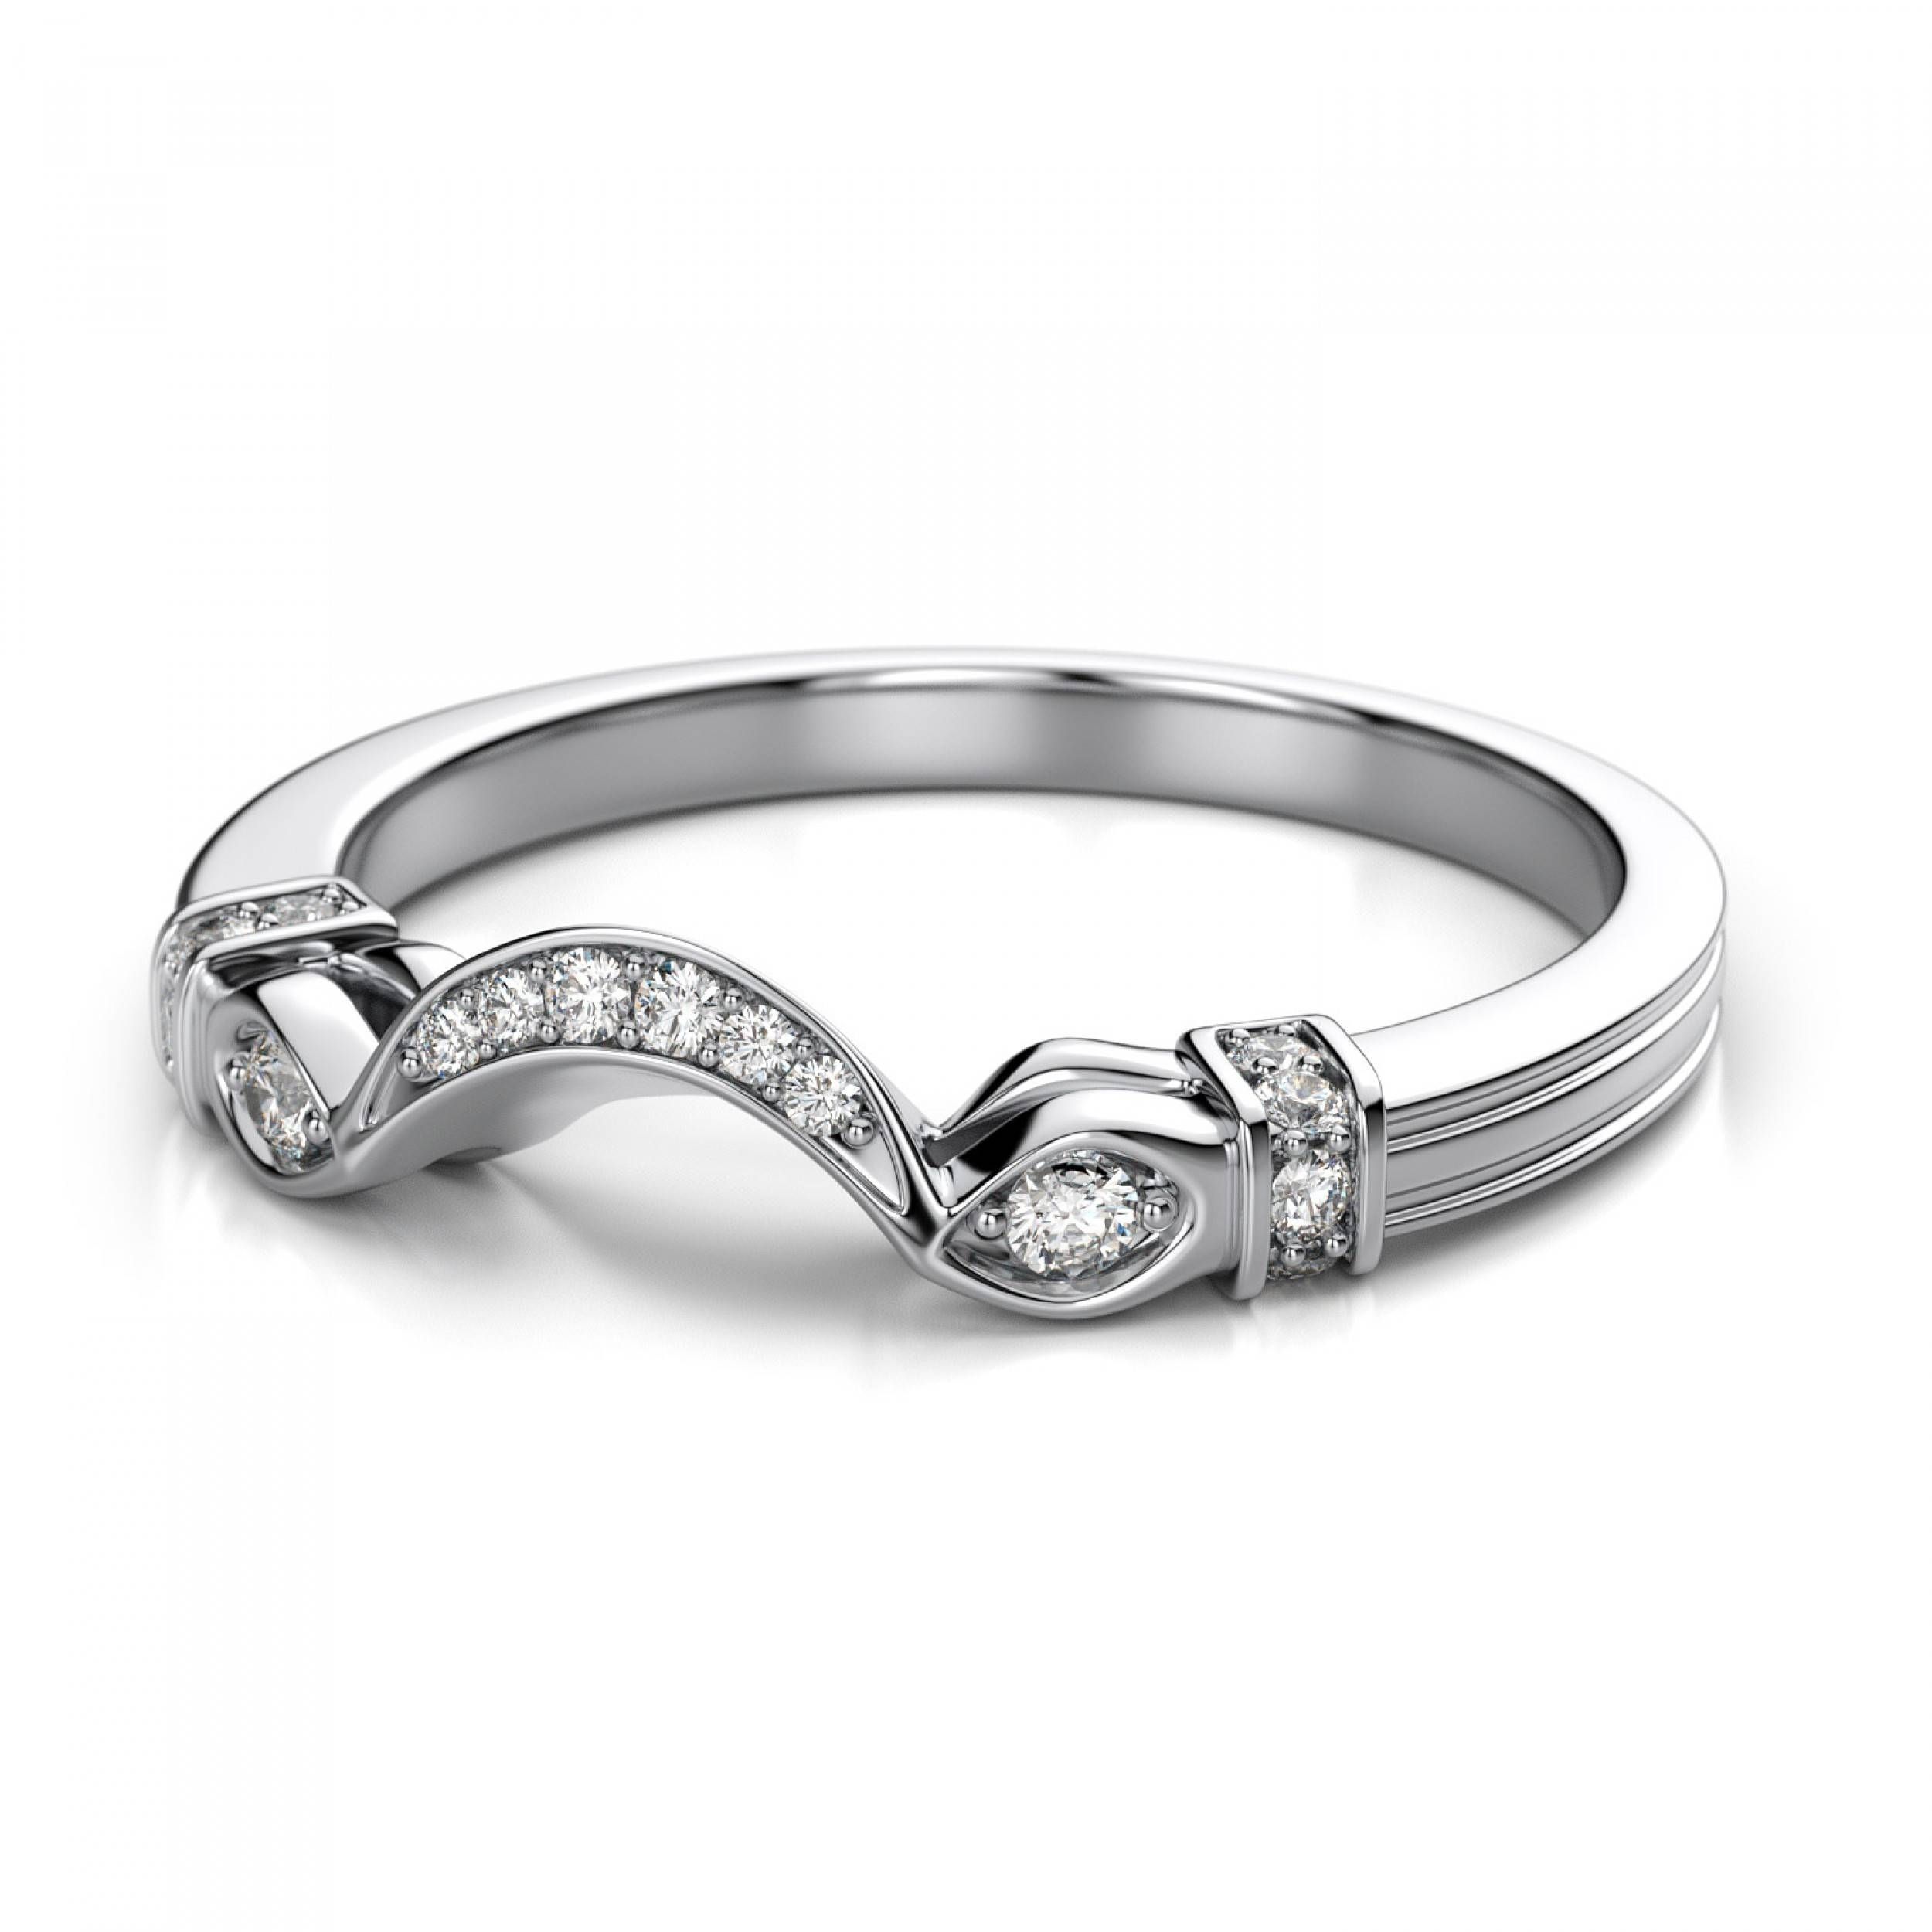 Palladium Halo Ring Tags : Palladium Wedding Ring Wedding Ring With Wedding Bands To Match Halo Rings (View 13 of 15)